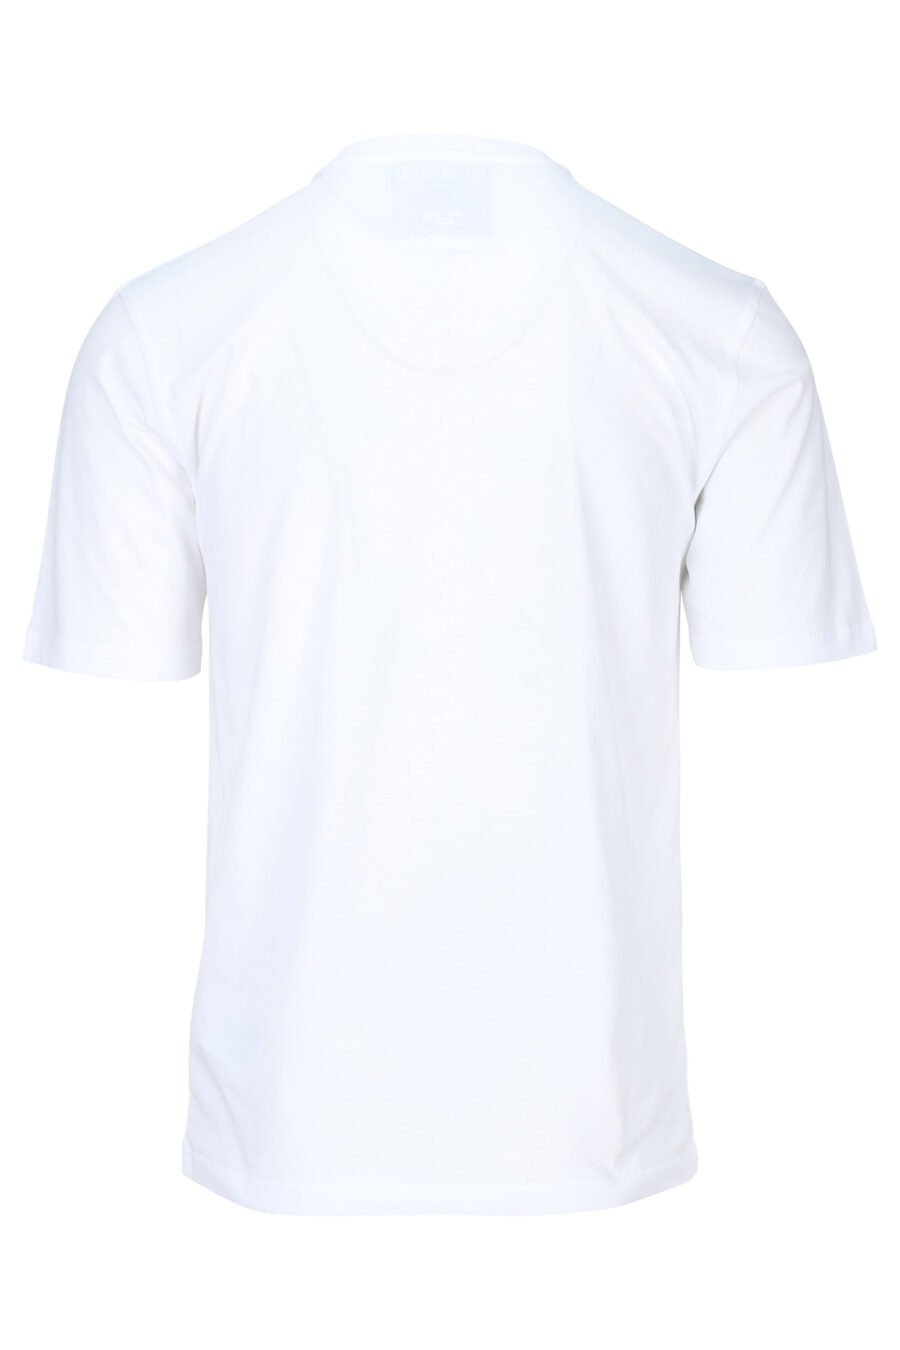 T-shirt blanc avec mini-logo "tailleur de nounours" - 667113124889 1